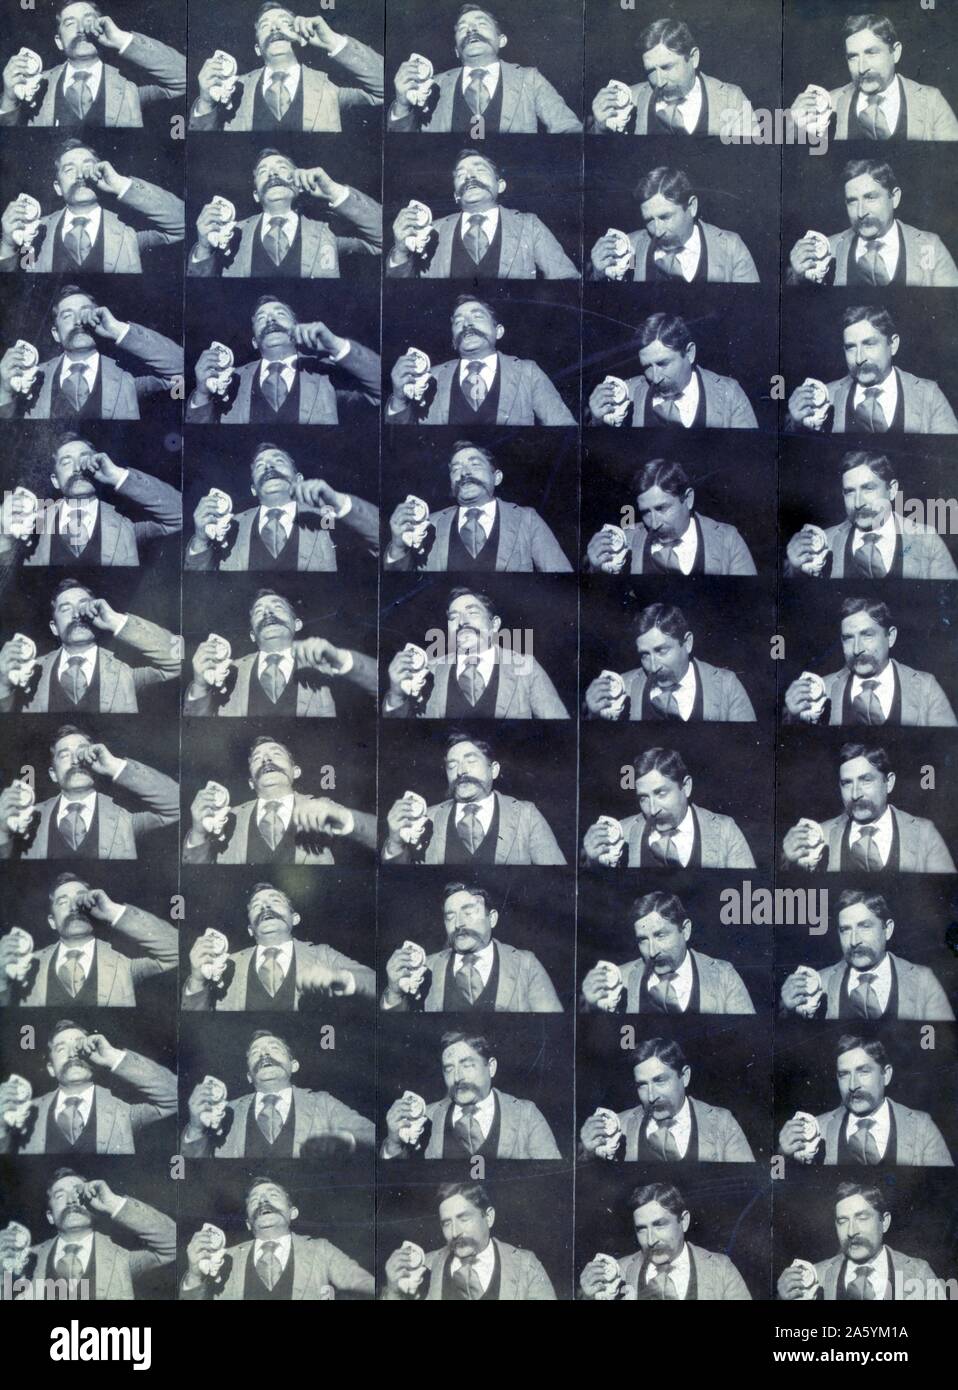 Edison kinetoscopic Datensatz einer Niesen 1894. Foto besteht aus einer Serie von 45 Frames für einen Film, das einen Mann zeigt, Fred Ott, Niesen. Diese fotografische Drucken auf Karton montiert ist das früheste erhaltene 'Motion picture" bekannt als 'Fred Ott's Niesen" für den Stern (eine Edison Ingenieur), das Foto stellt die Morgendämmerung des Filmemachens in Amerika zwar etwas von einer historischen Unfall. Stockfoto